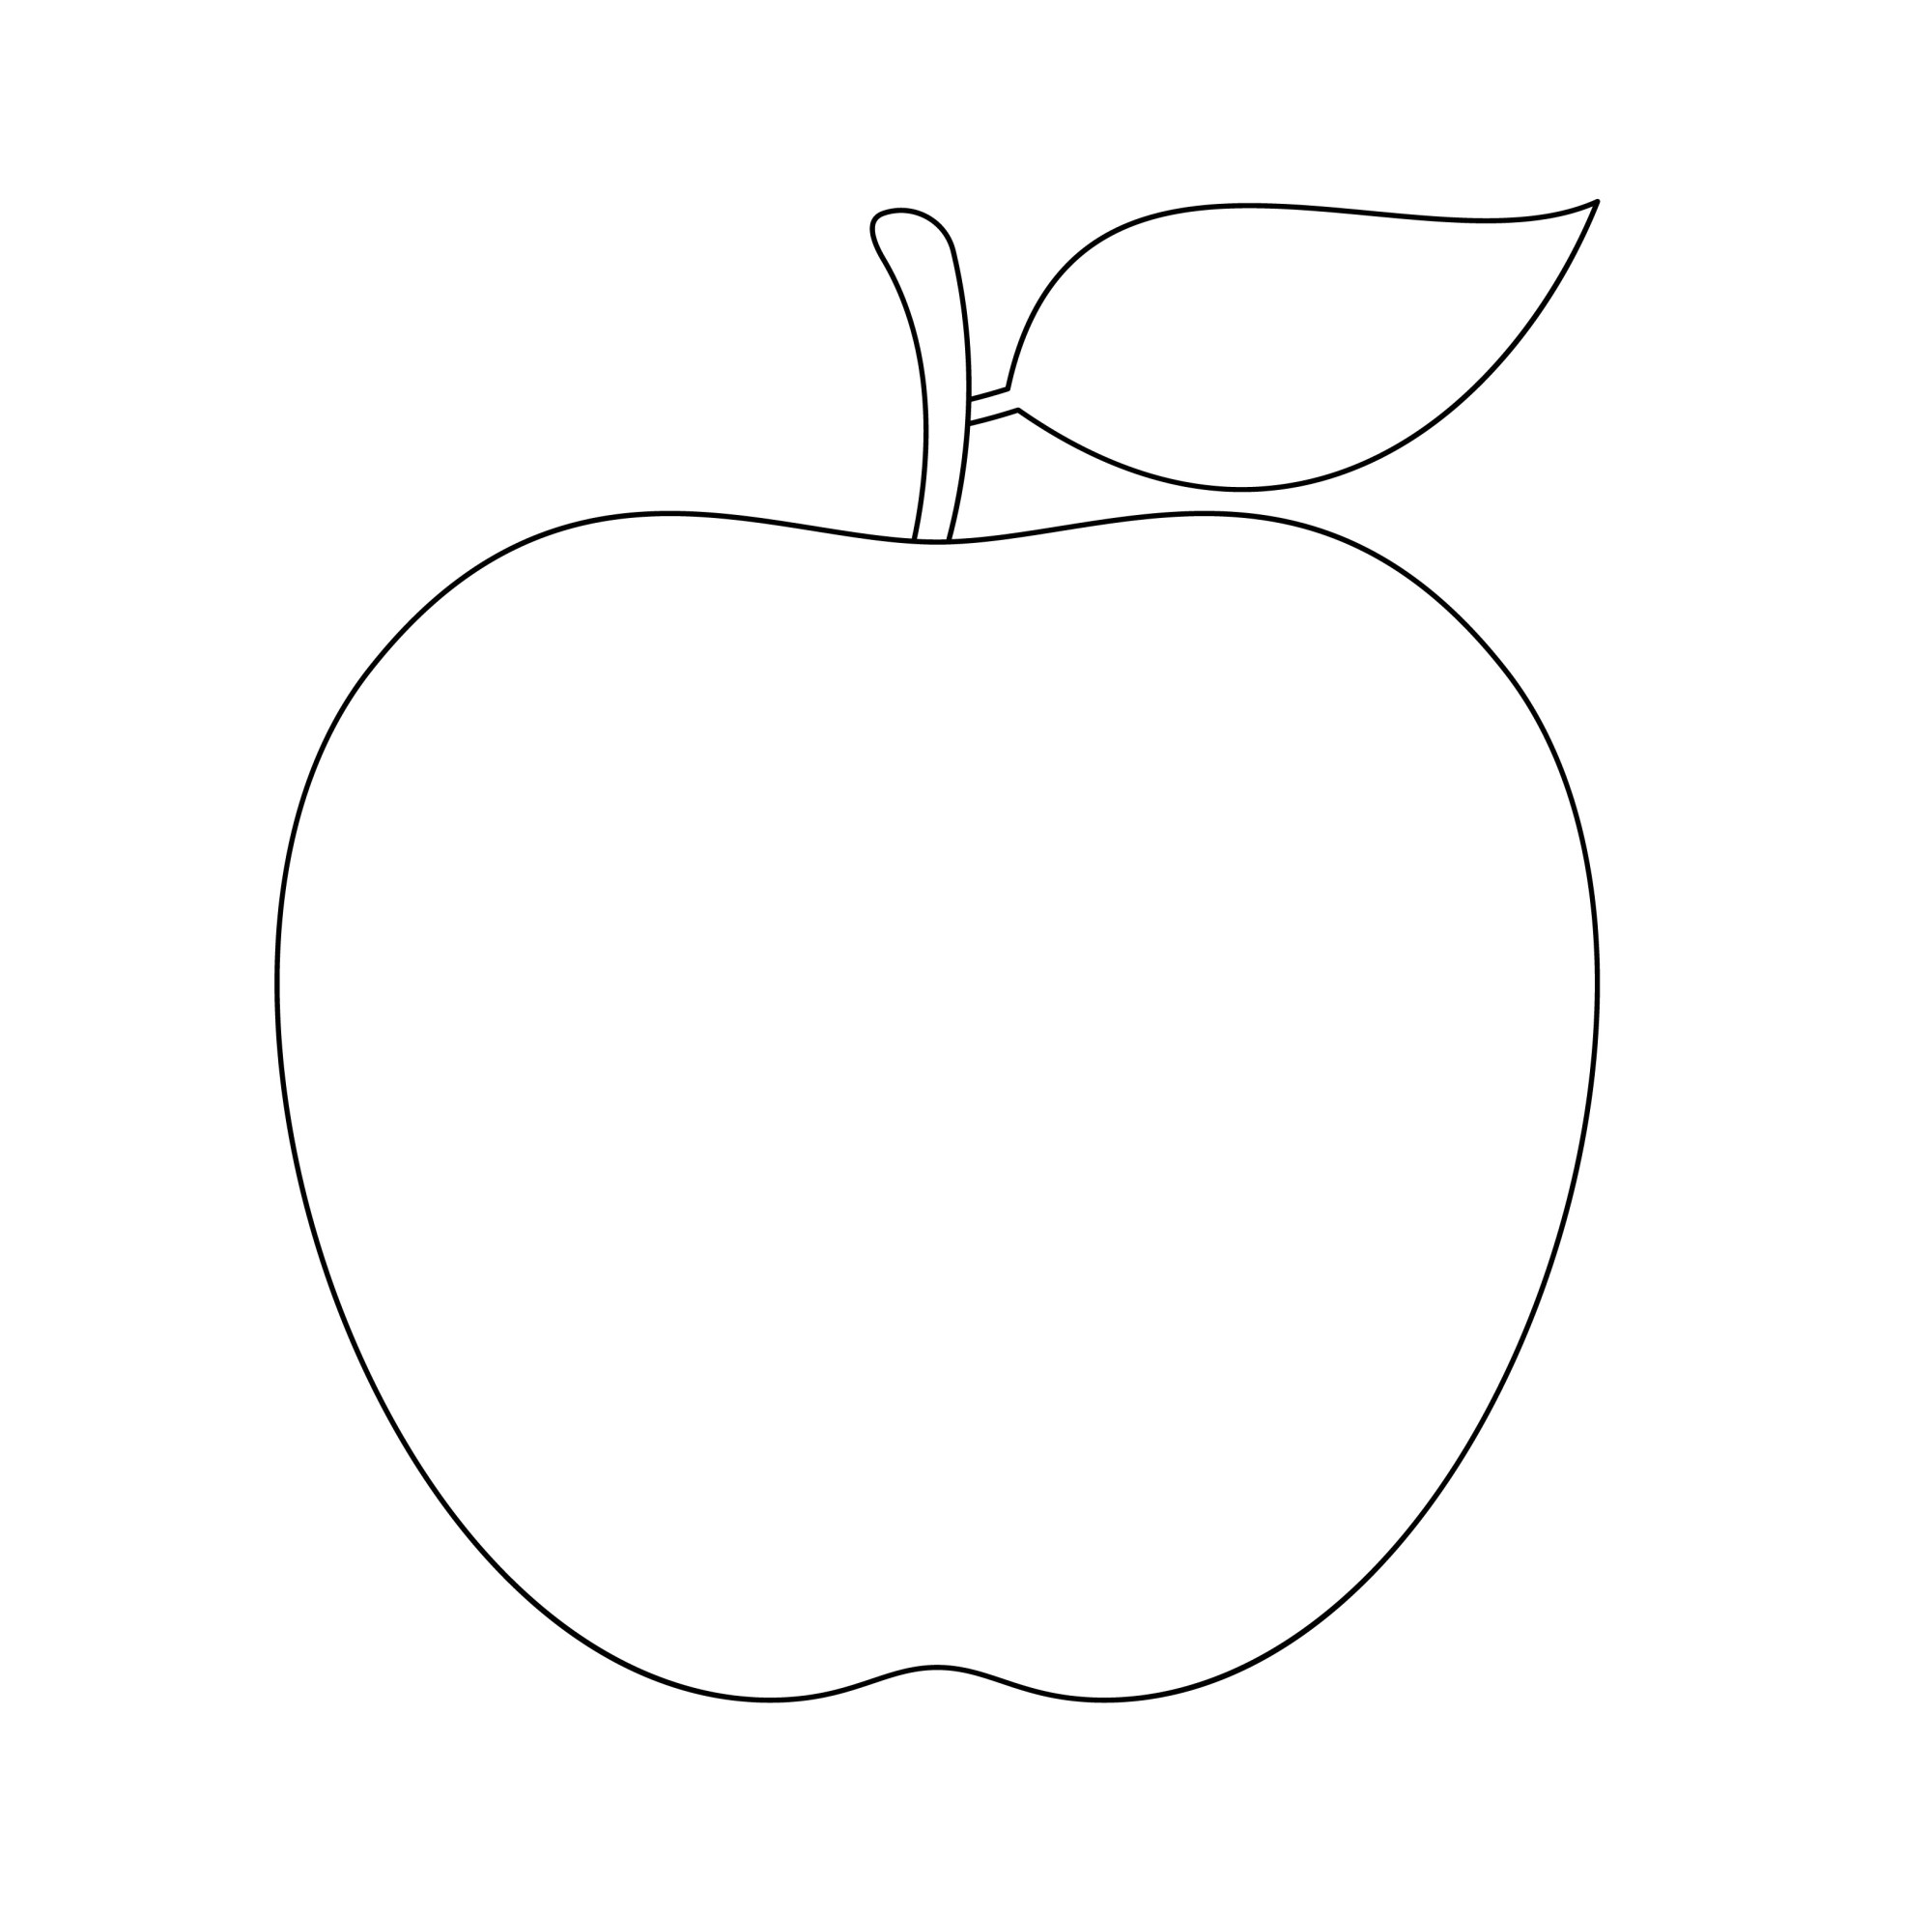 Раскраска для детей: вкусное яблоко